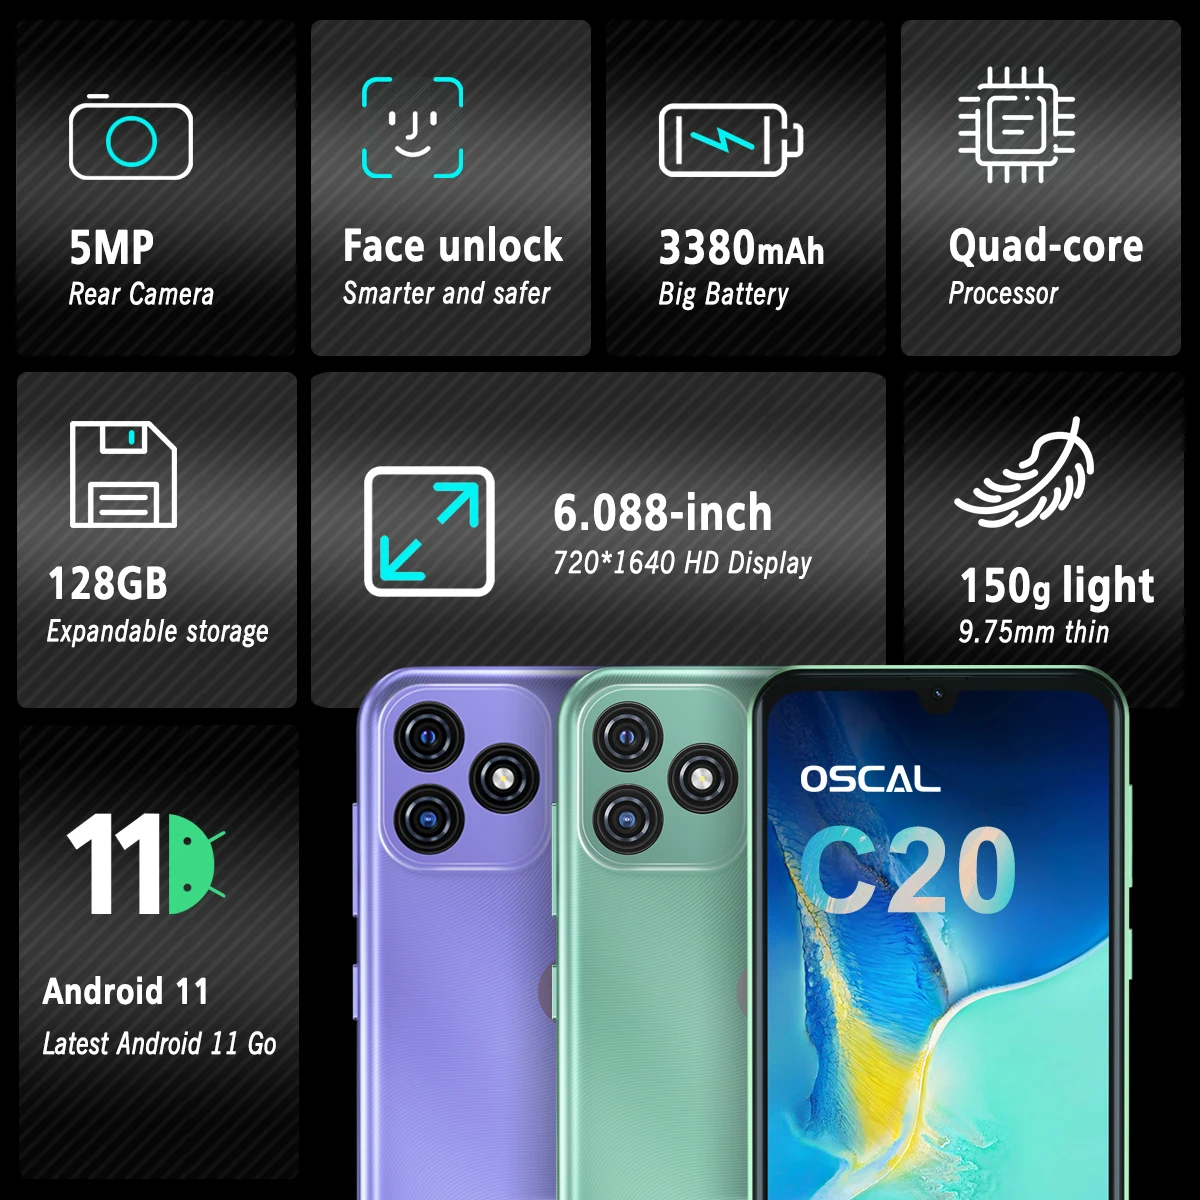 Смартфон Blackview OSCAL C20 мобильный телефон экран 6 088 дюйма Android 11 1 ГБ ОЗУ + 32 Гб ПЗУ 3380